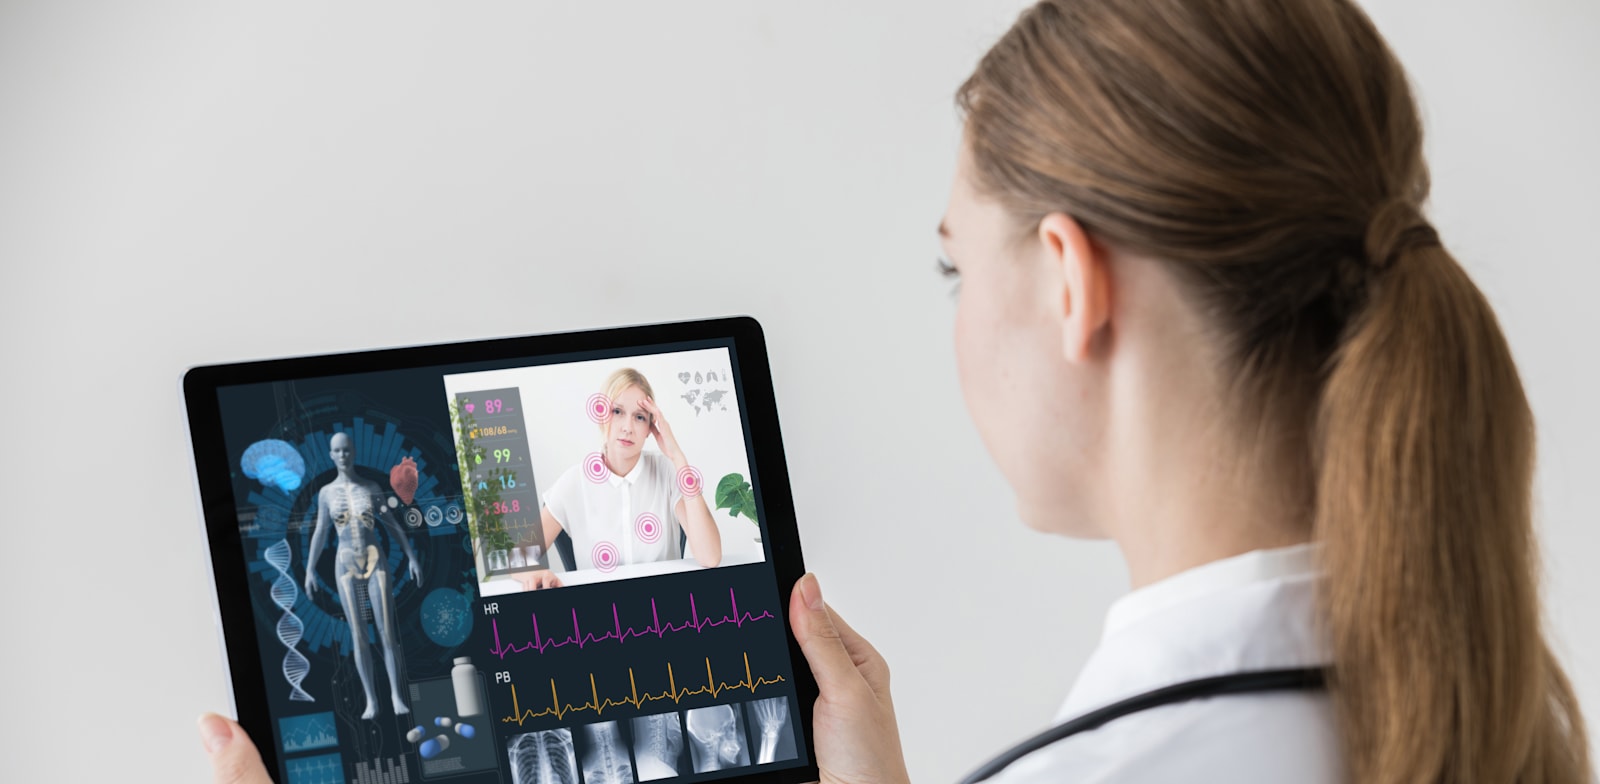 בריאות דיגיטלית / אילוסטרציה: Shutterstock